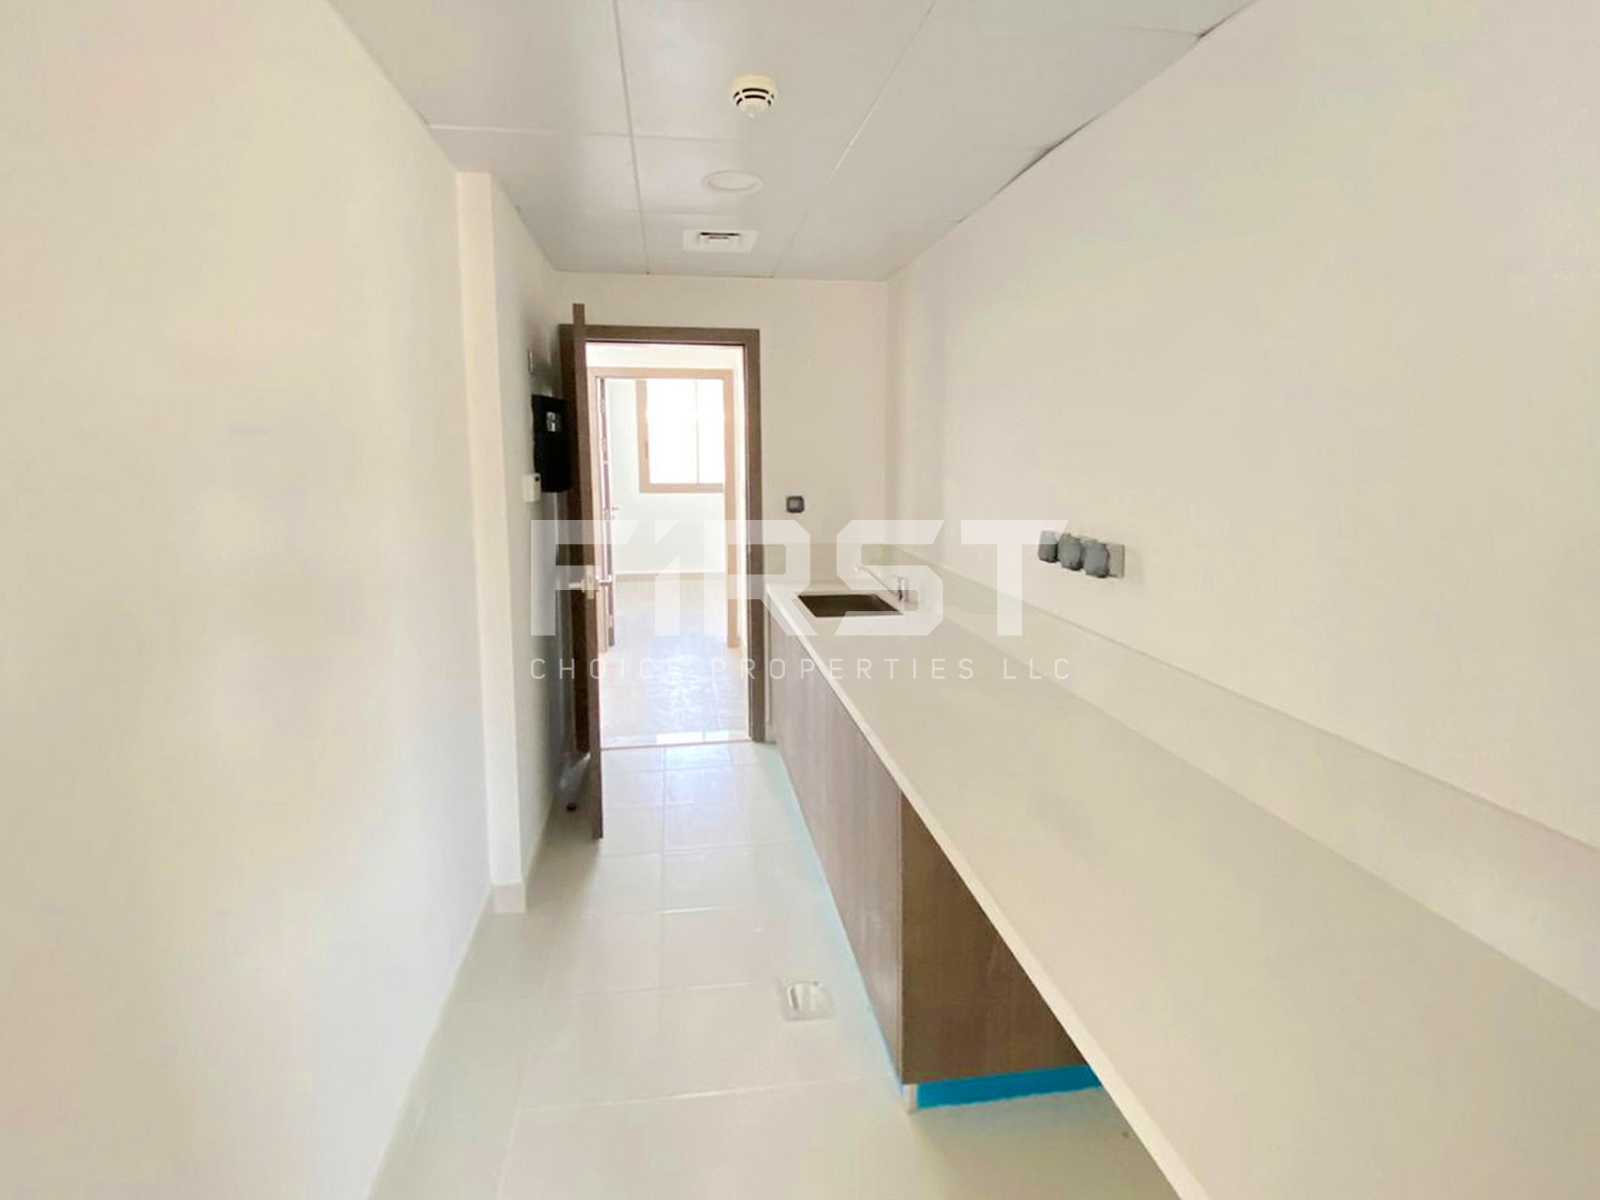 External Photo of 4 Bedroom Duplex Type 4Y in Yas Acres Yas Island AUH UAE (4).jpg